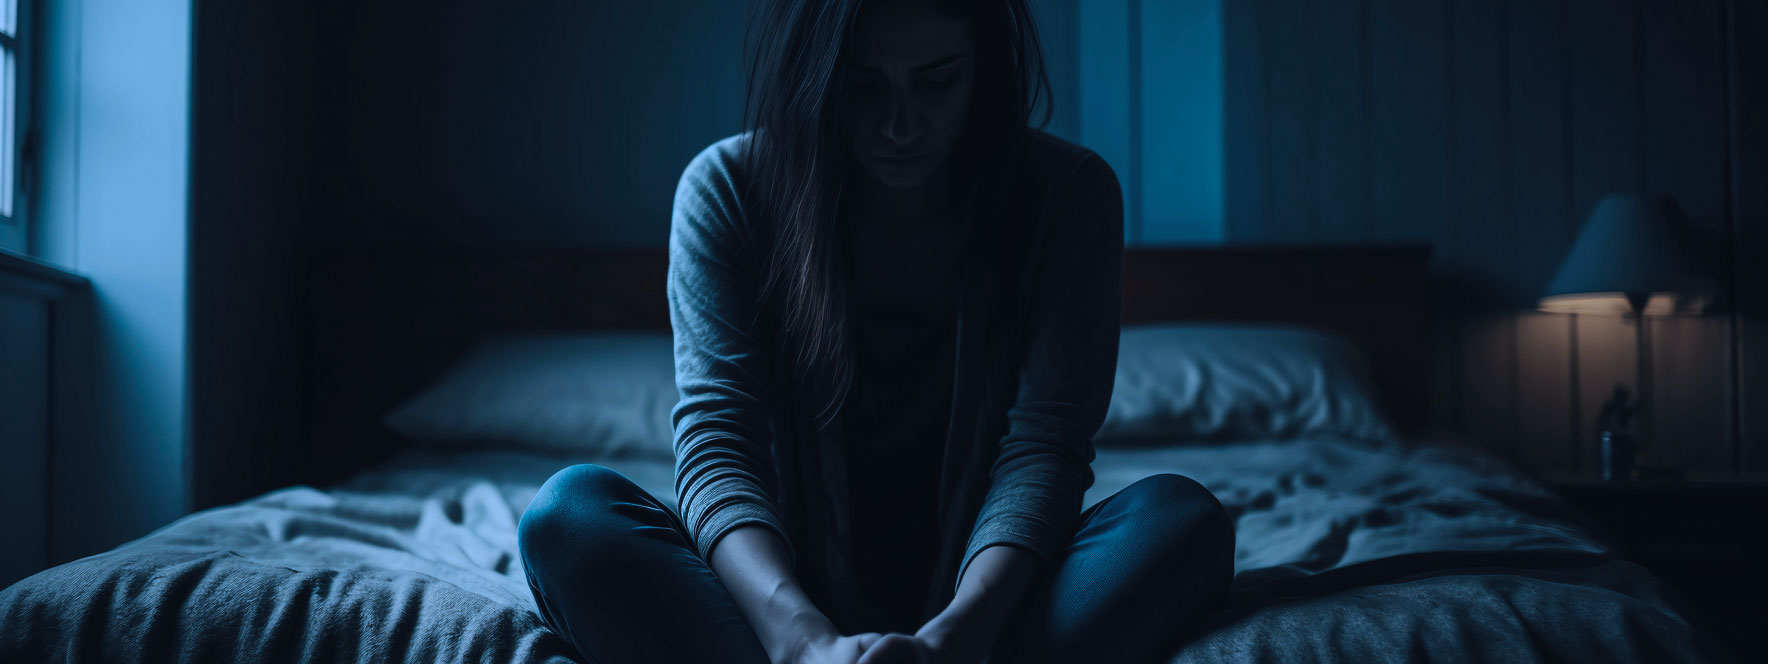 Une femme assise sur un lit a vécu un traumatisme d'abus